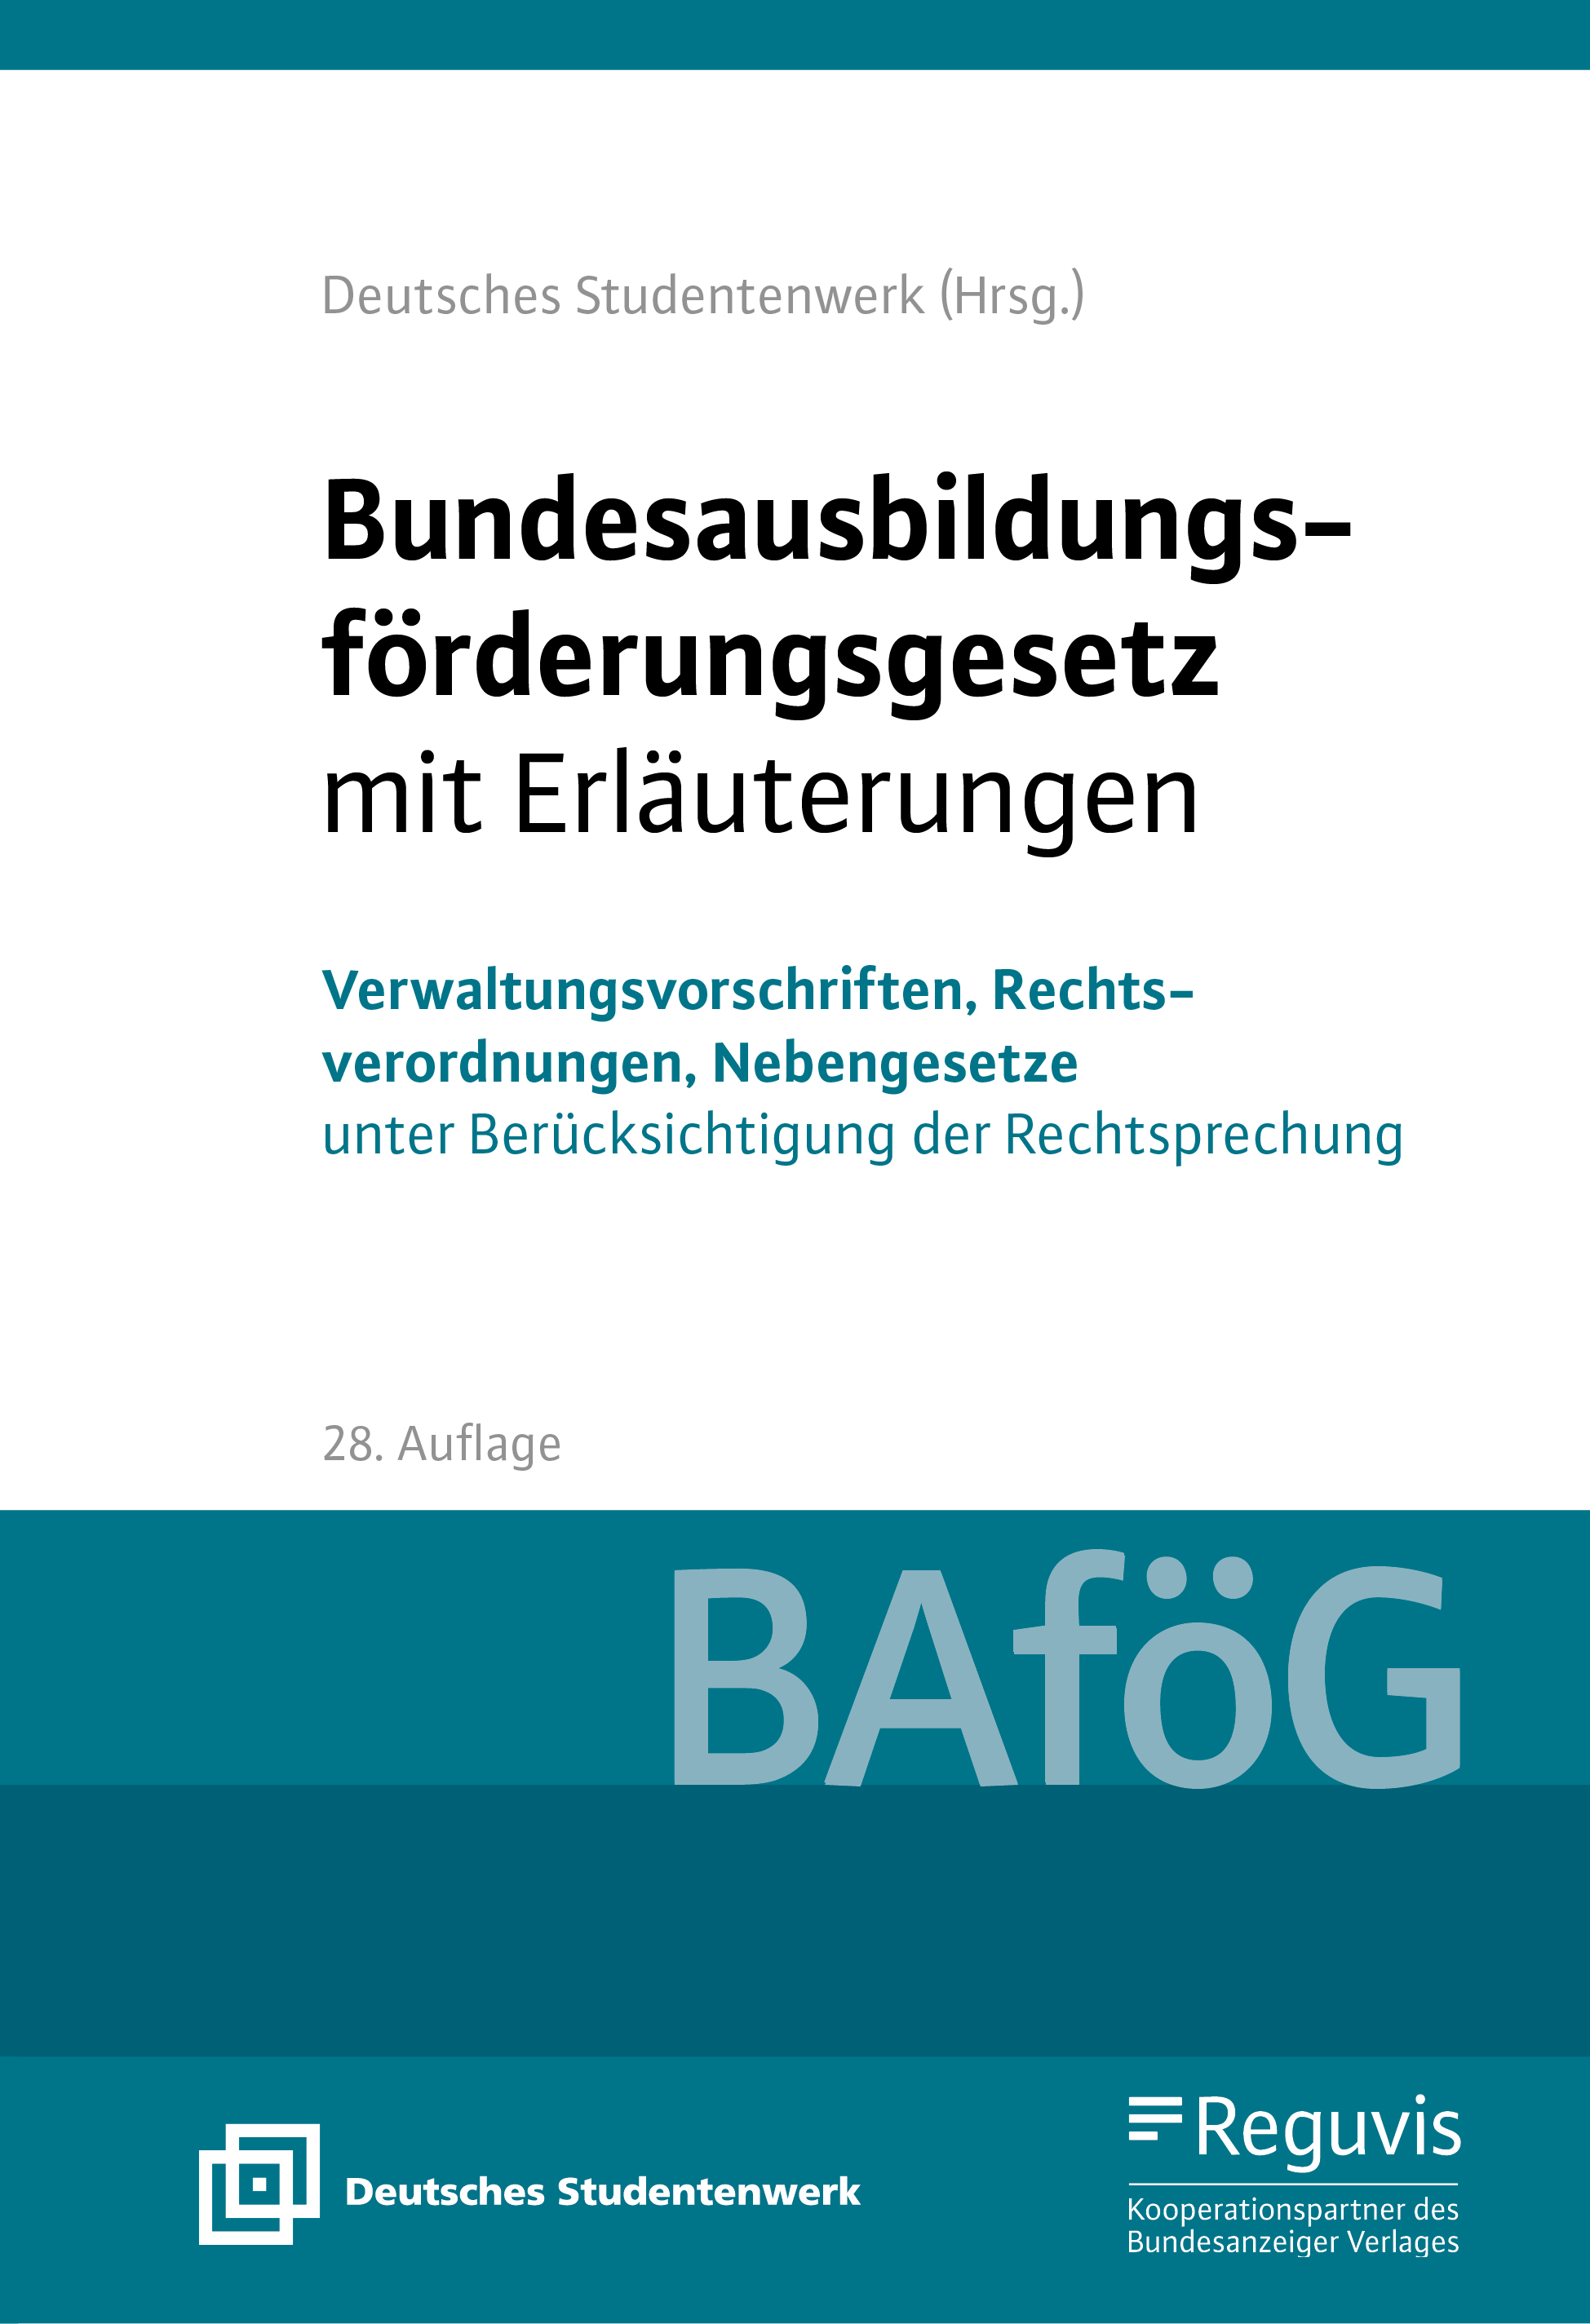 Bundesausbildungsförderungsgesetz mit Erläuterungen - BAföG